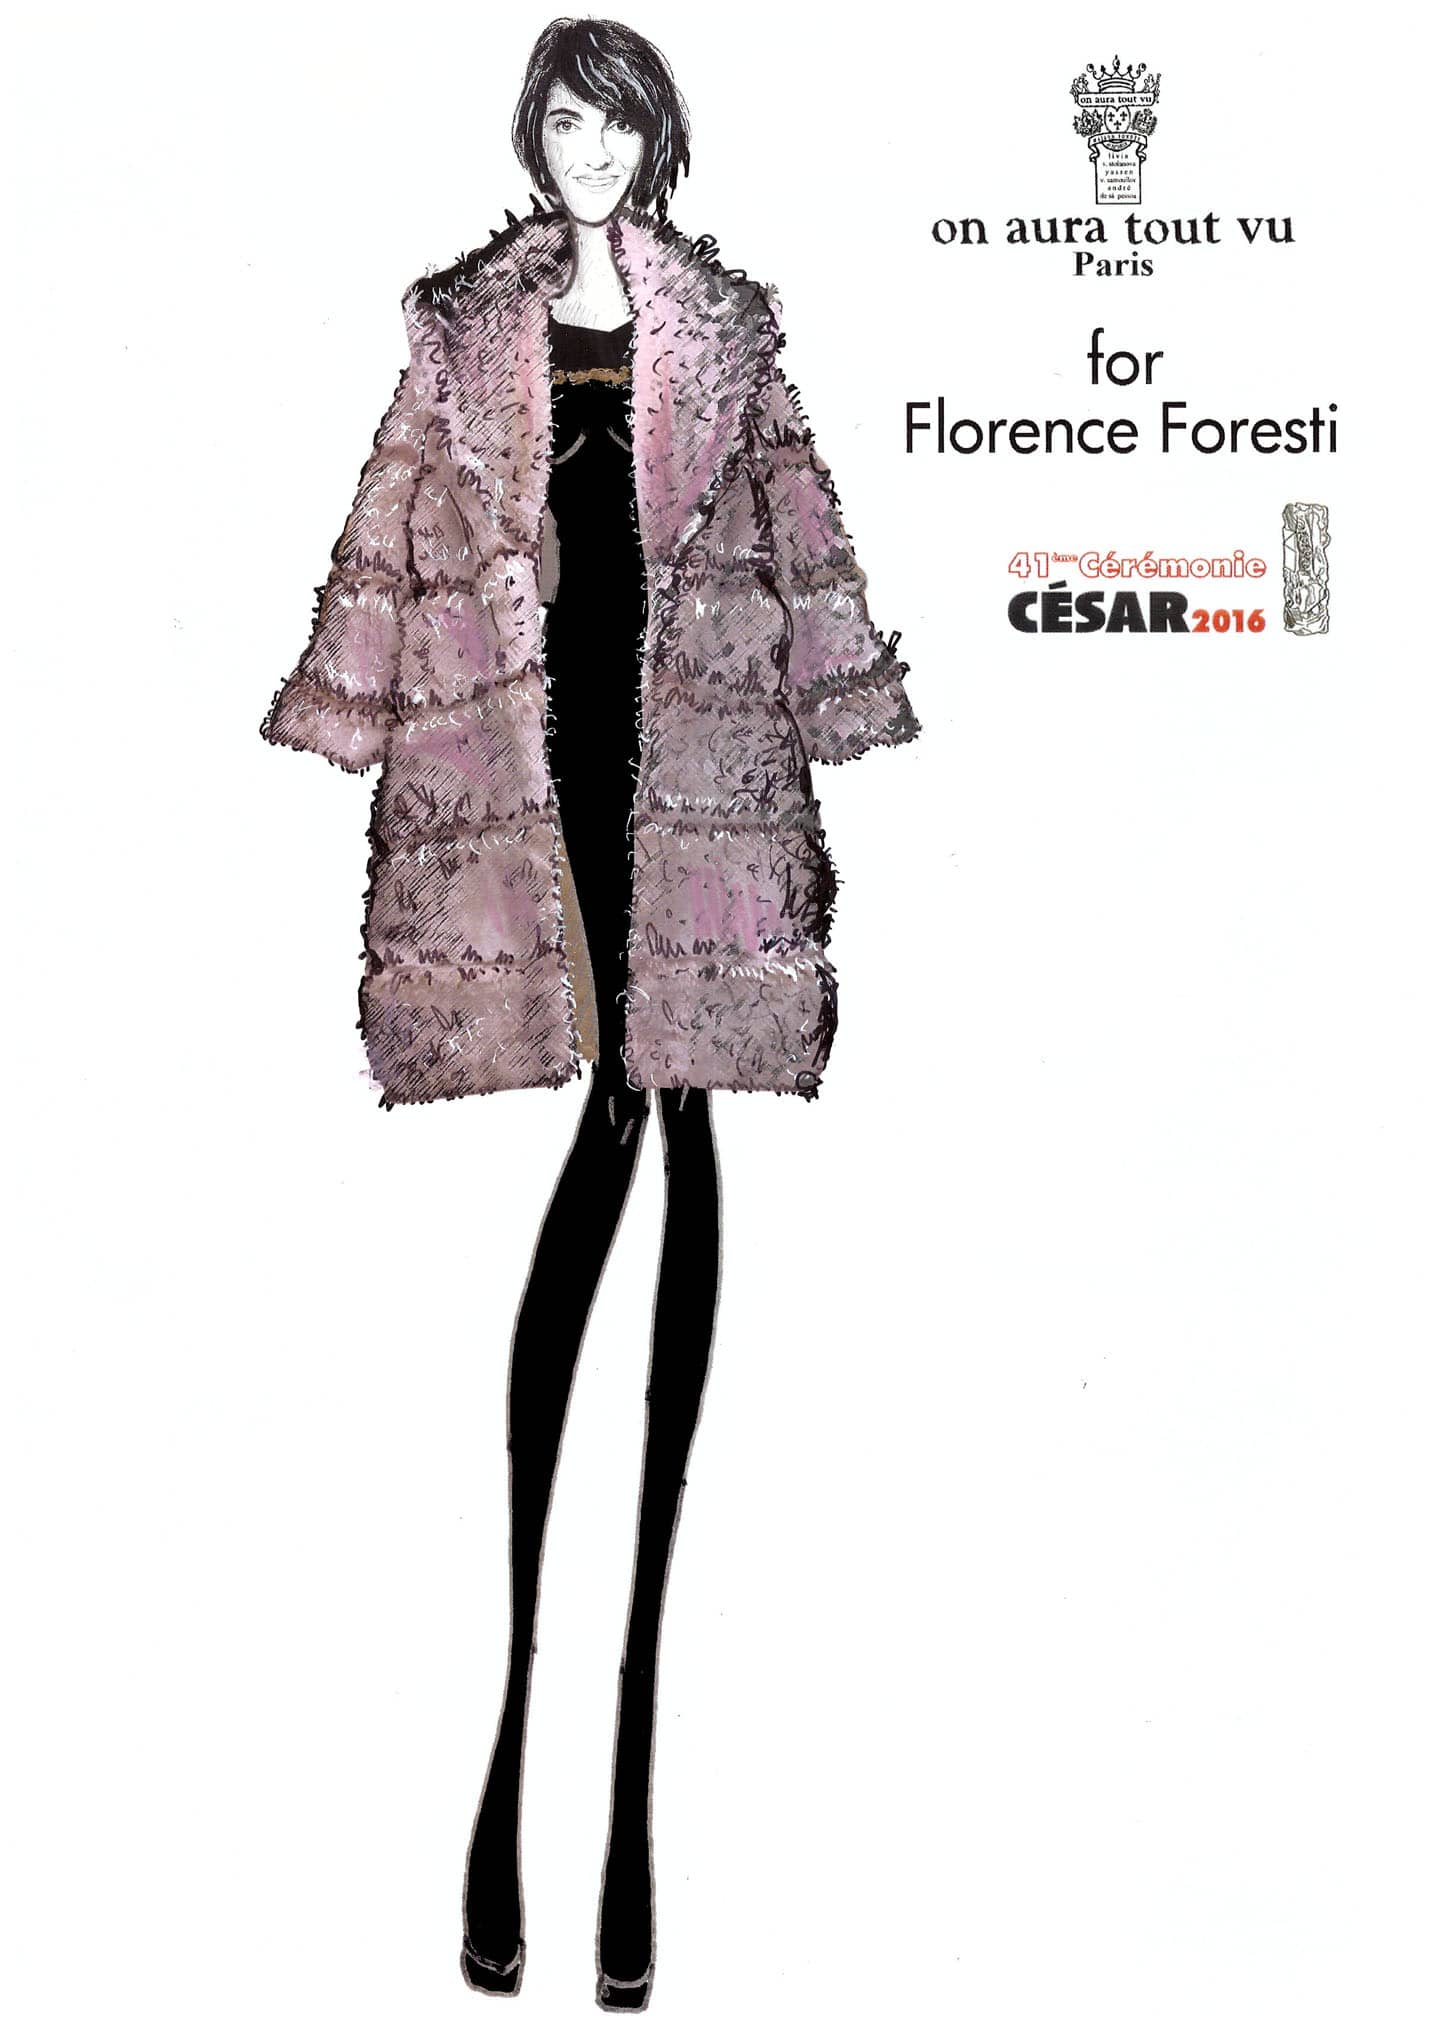 Florence_Foresti_on_aura_tout_vu_pour_cesar_2016_couture_coat